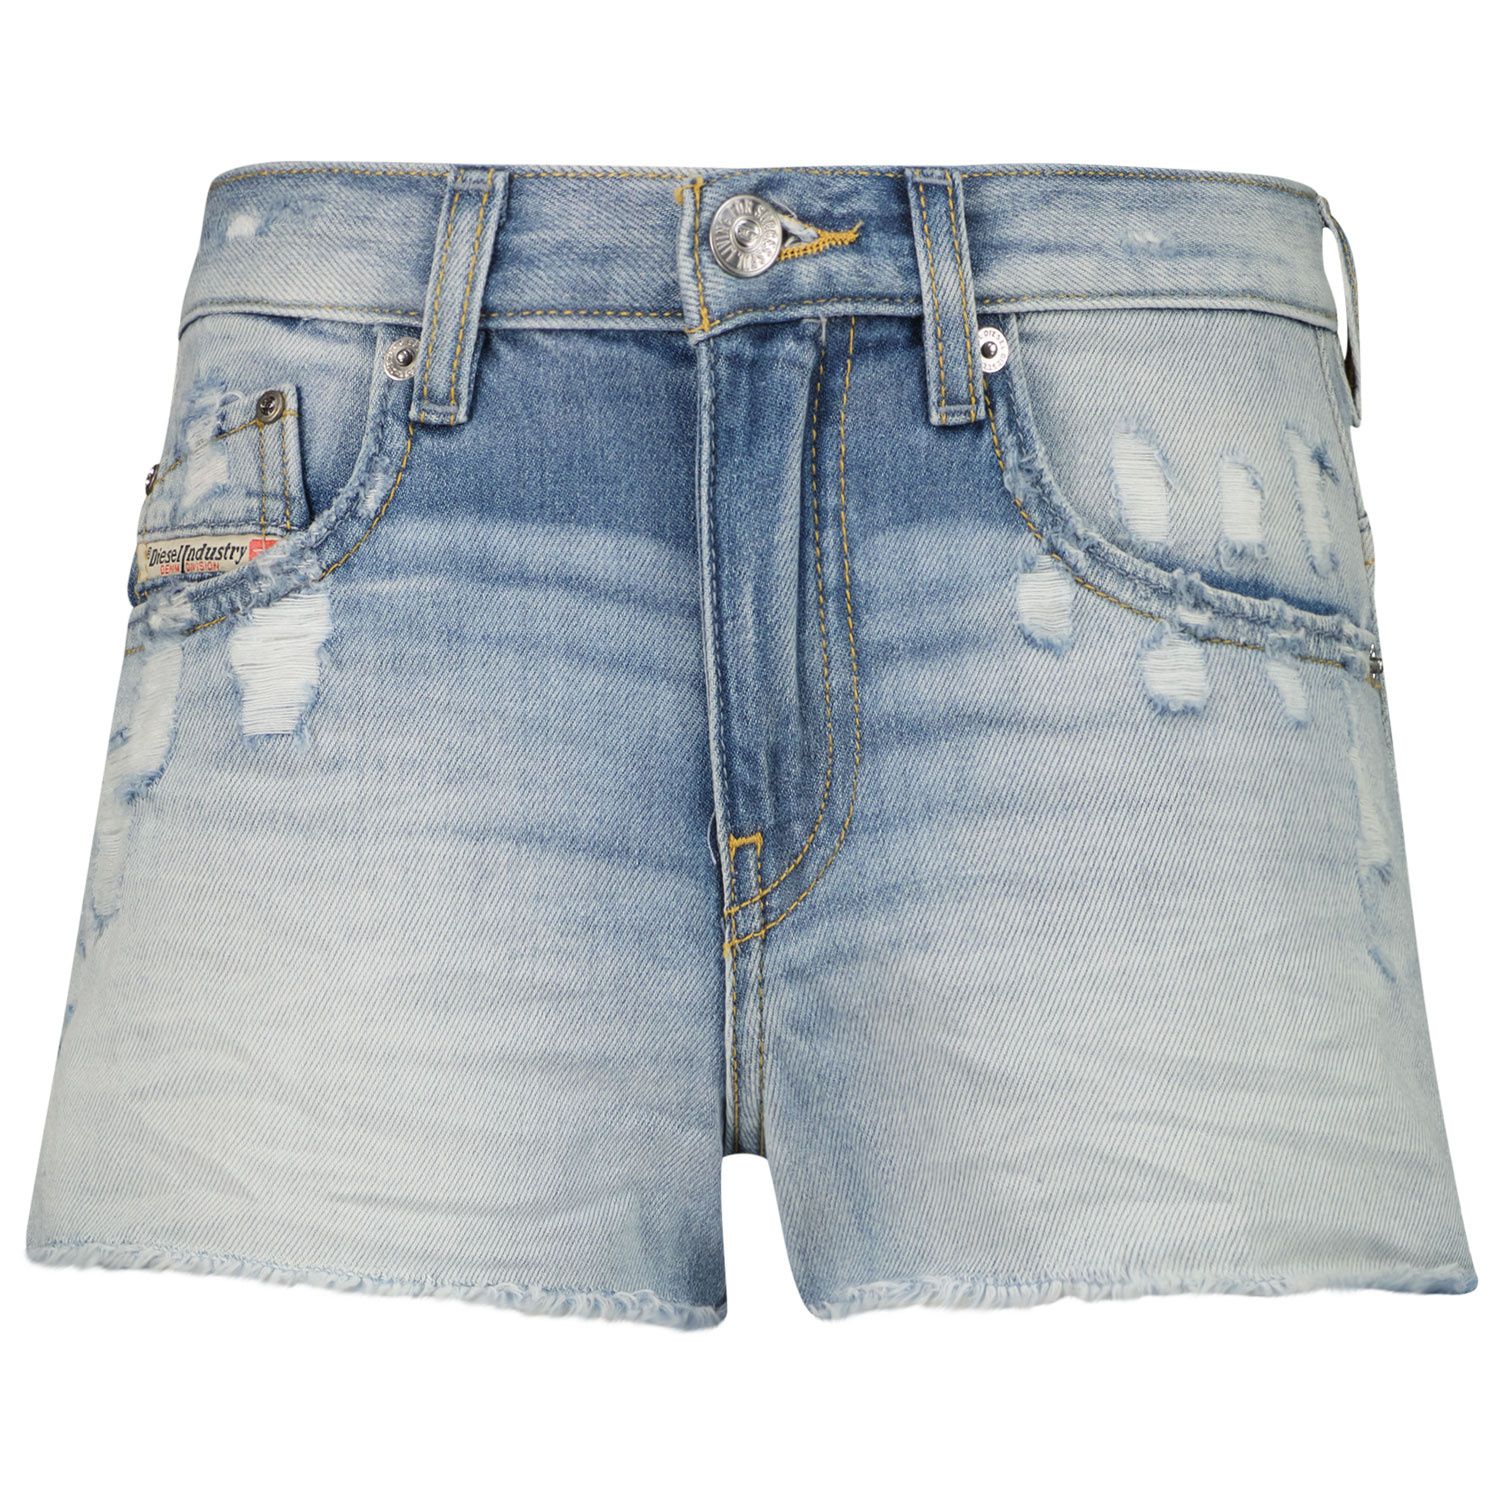 Afbeelding van Diesel J00158 kinder shorts jeans